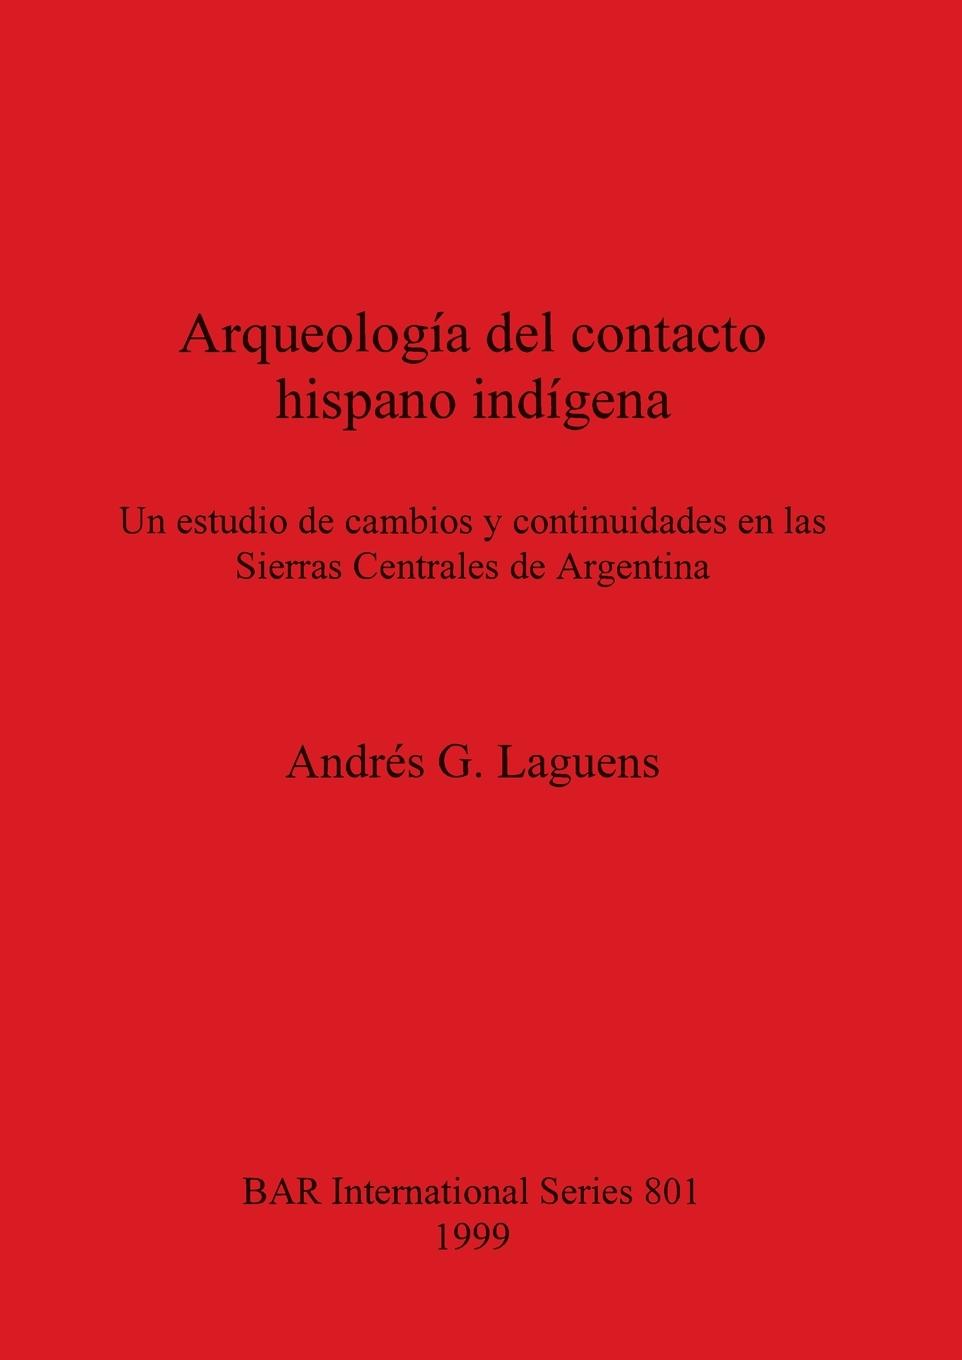 Carte Arqueologia del contacto hispano indigena: Un estudio de cambios y continuidades en las Sierras Centrales de Argentina 